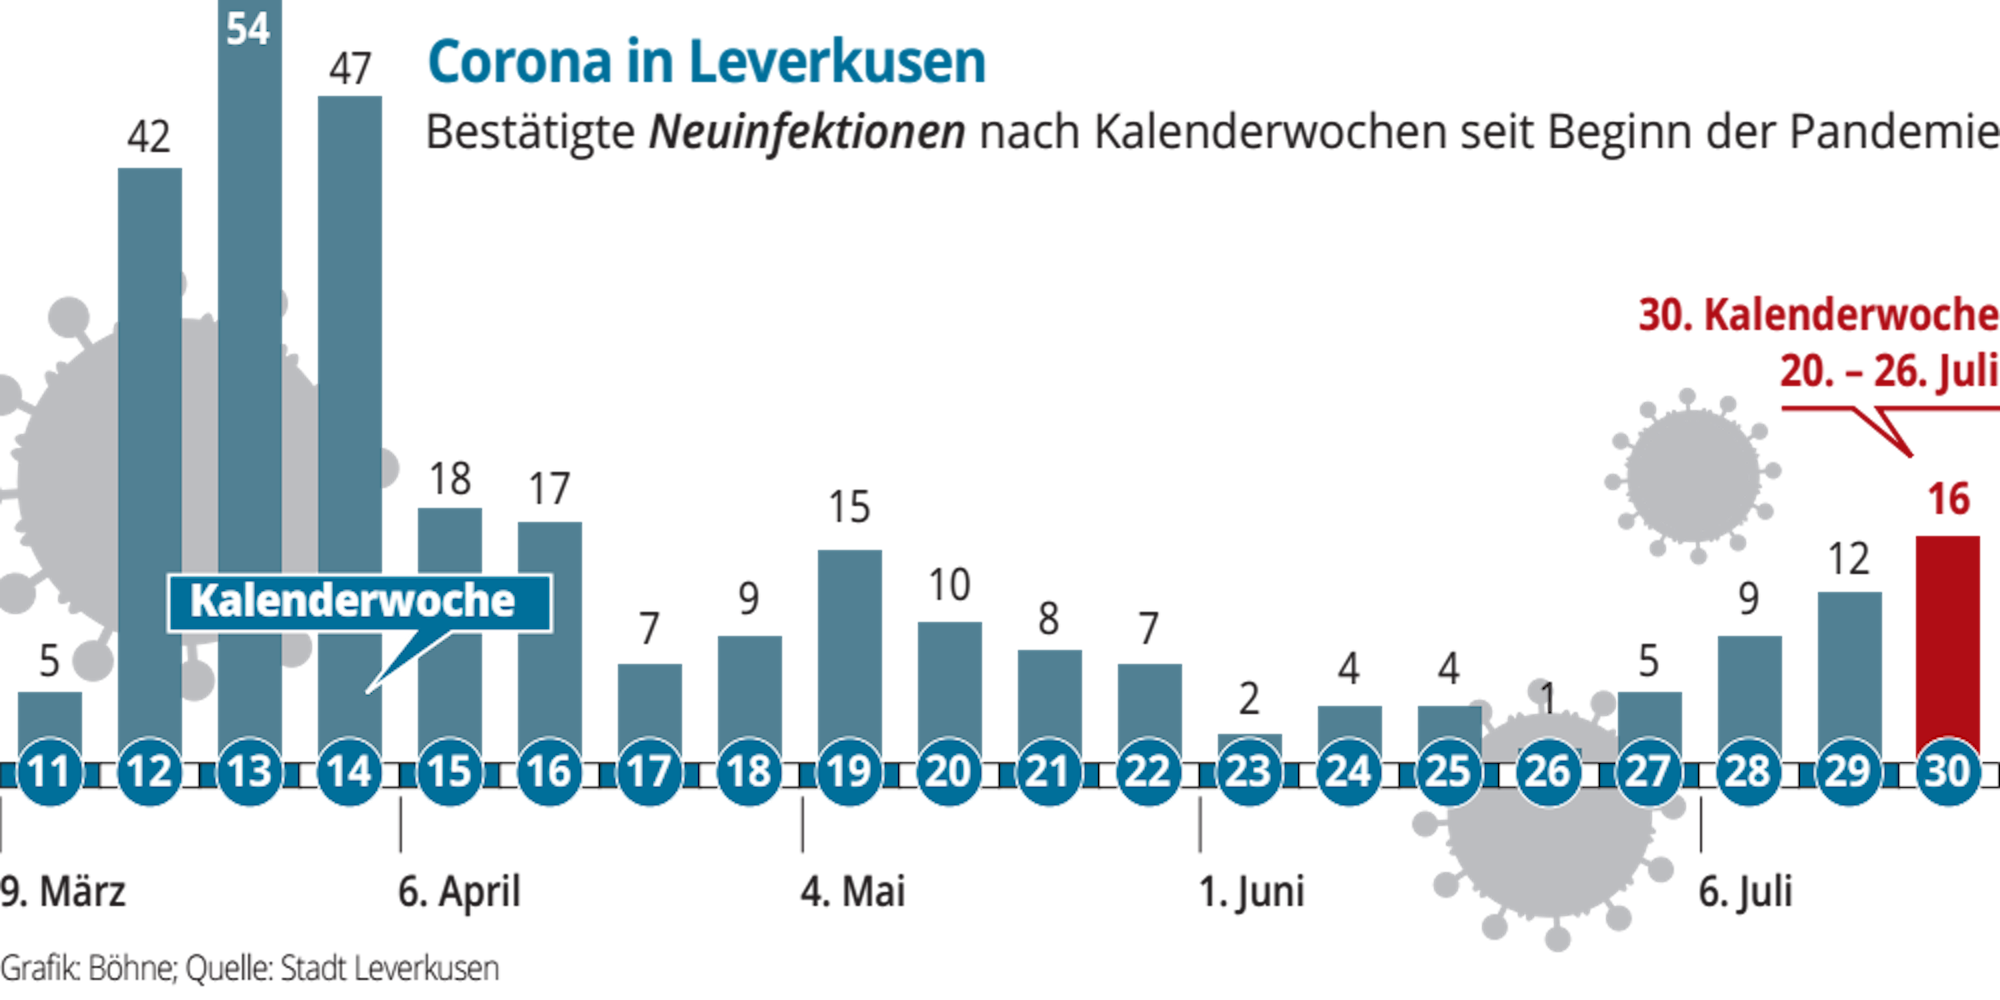 Verlauf der Infektionszahlen in Leverkusen nach Kalenderwoche